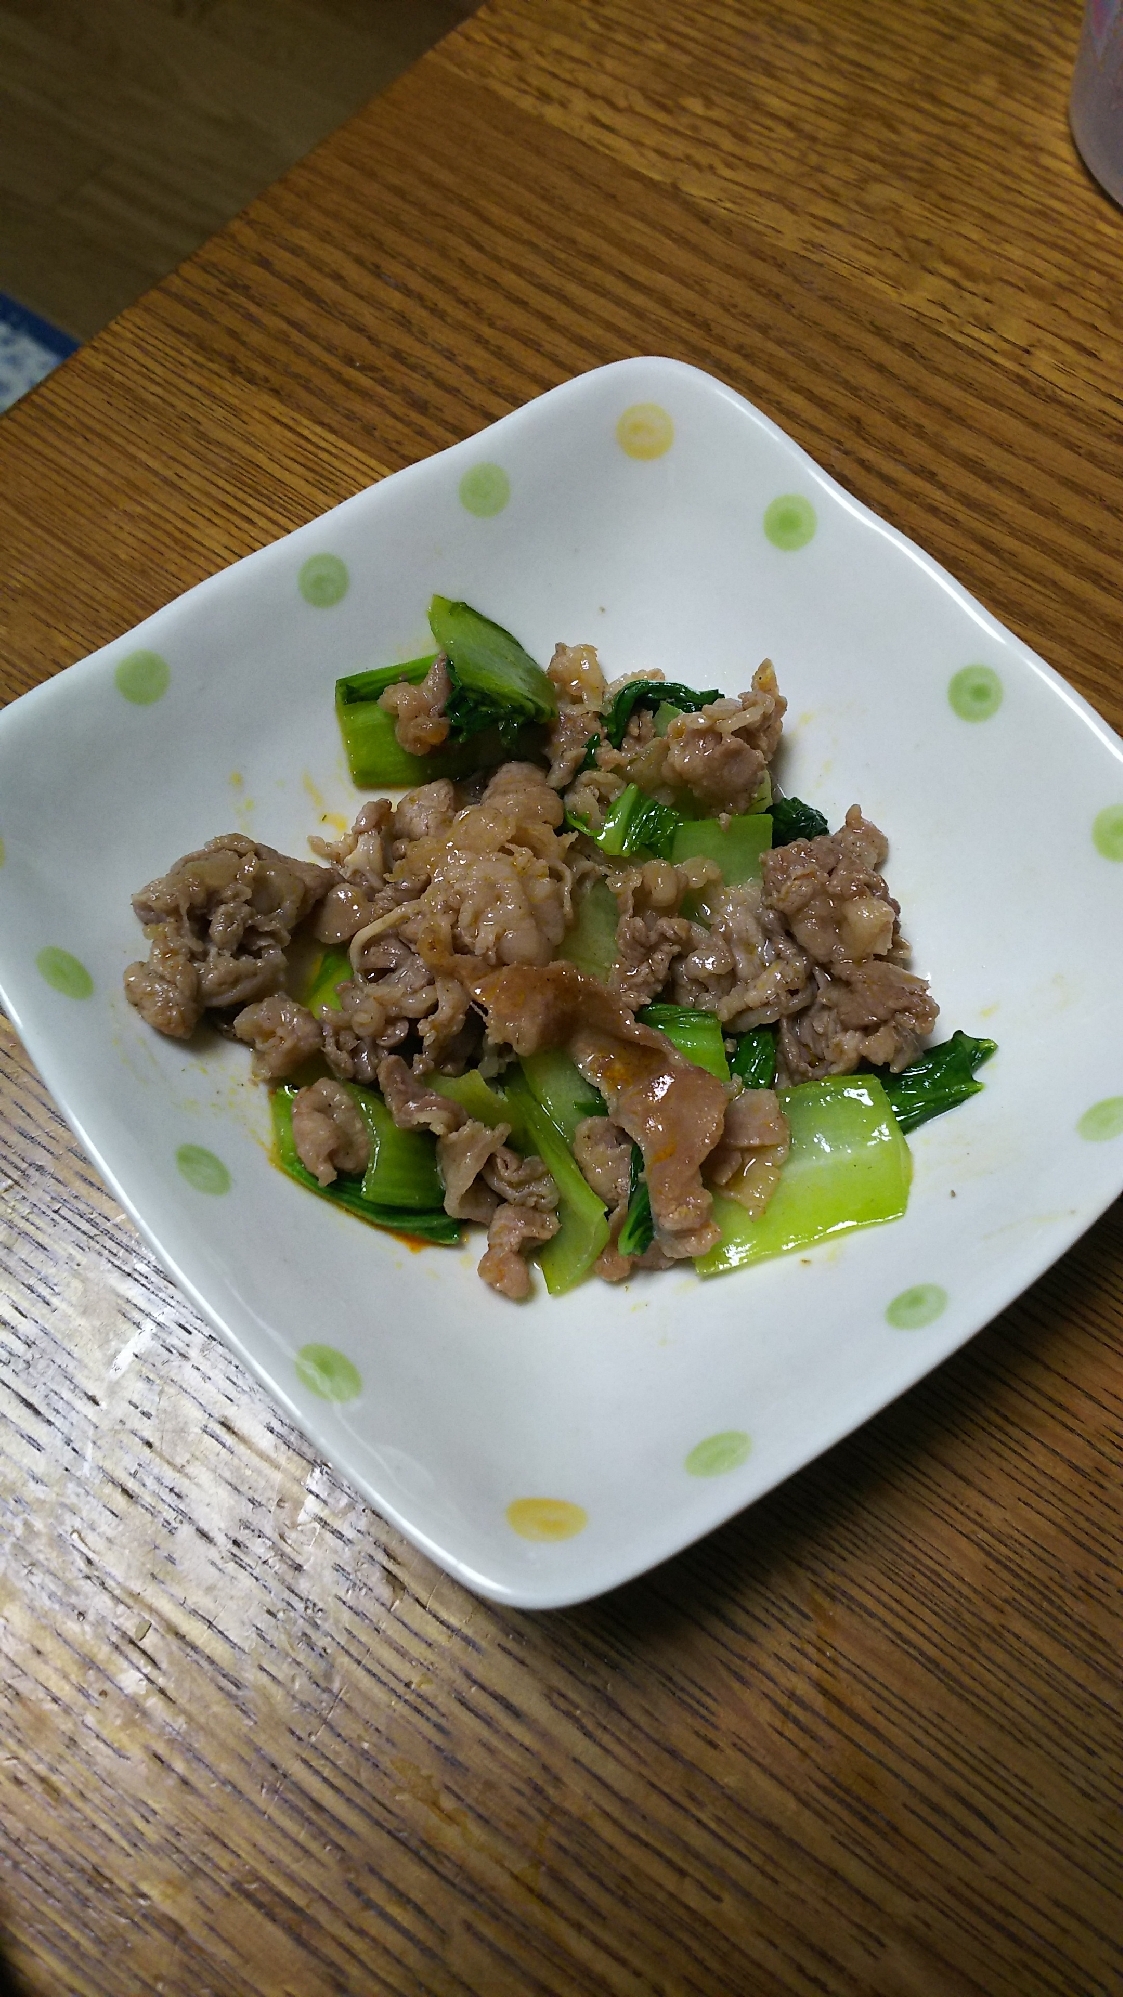 牛肉とチンゲン菜のトムヤムクンペースト炒め